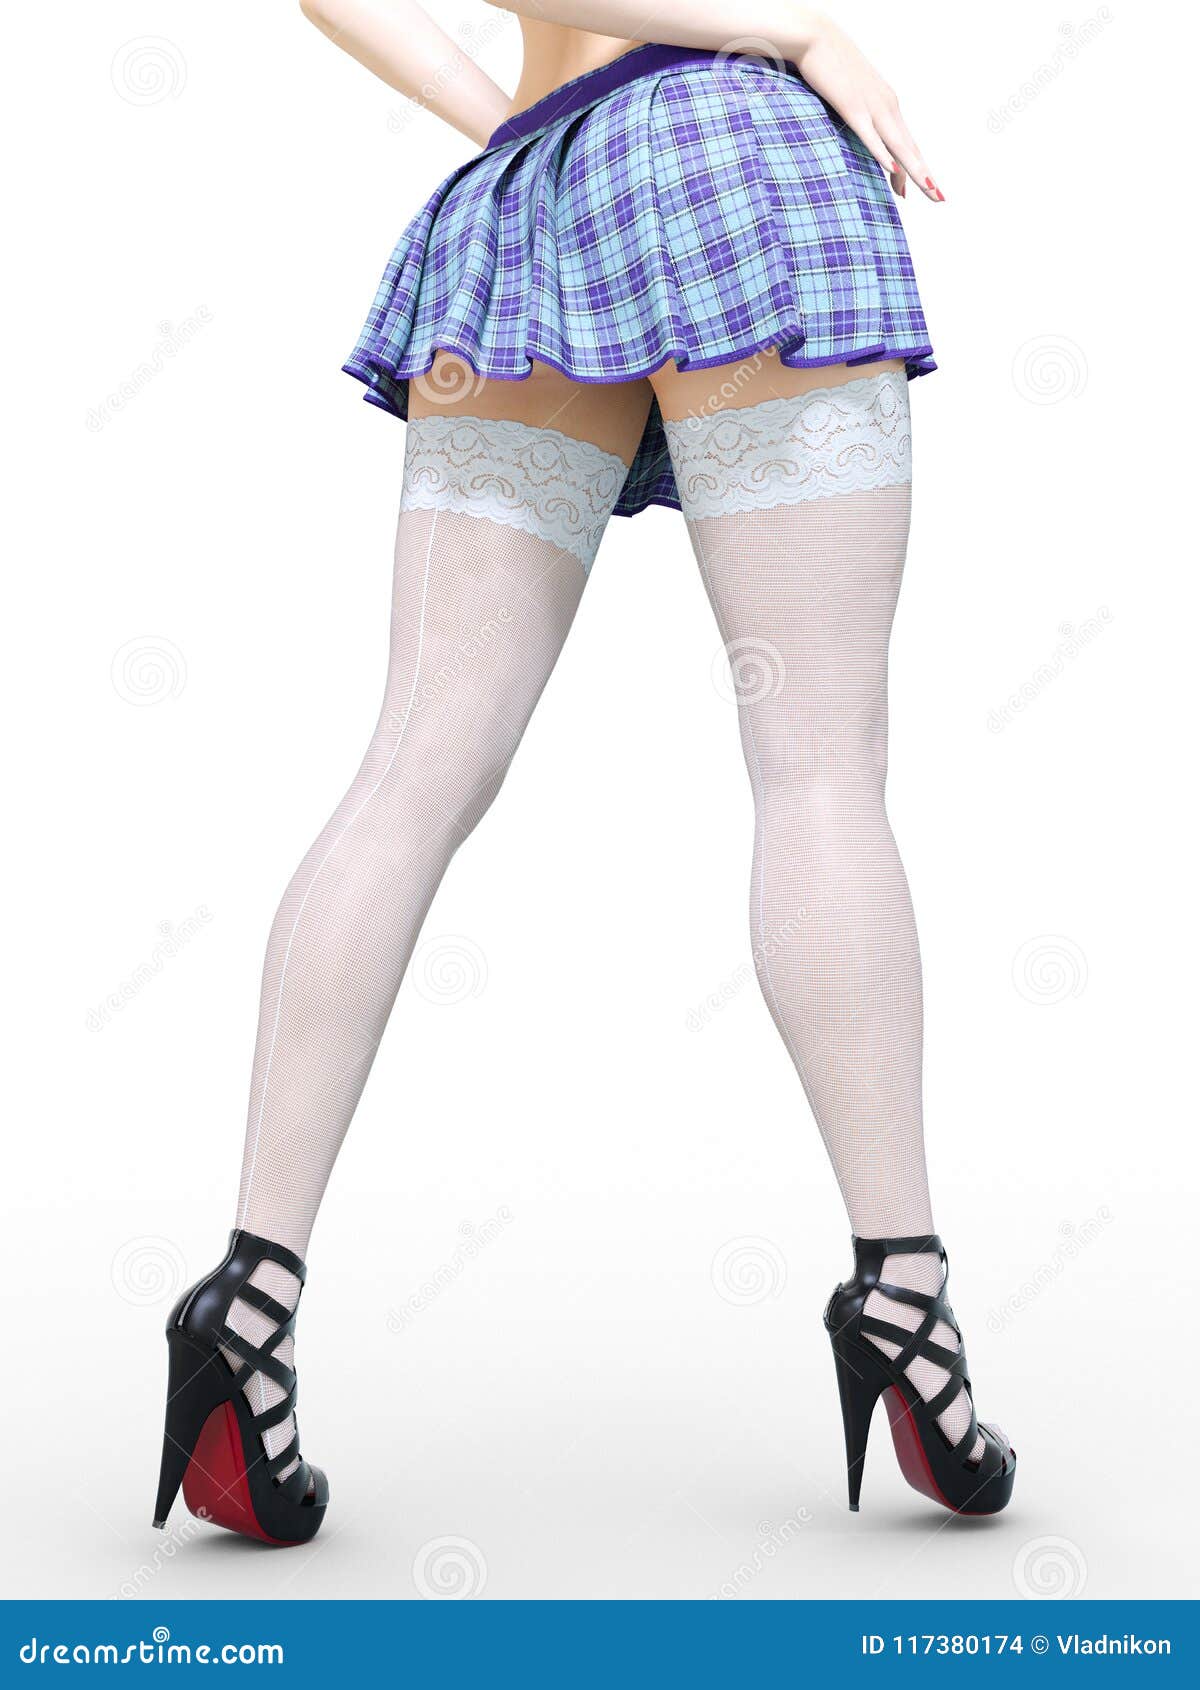 Stockings short skirt